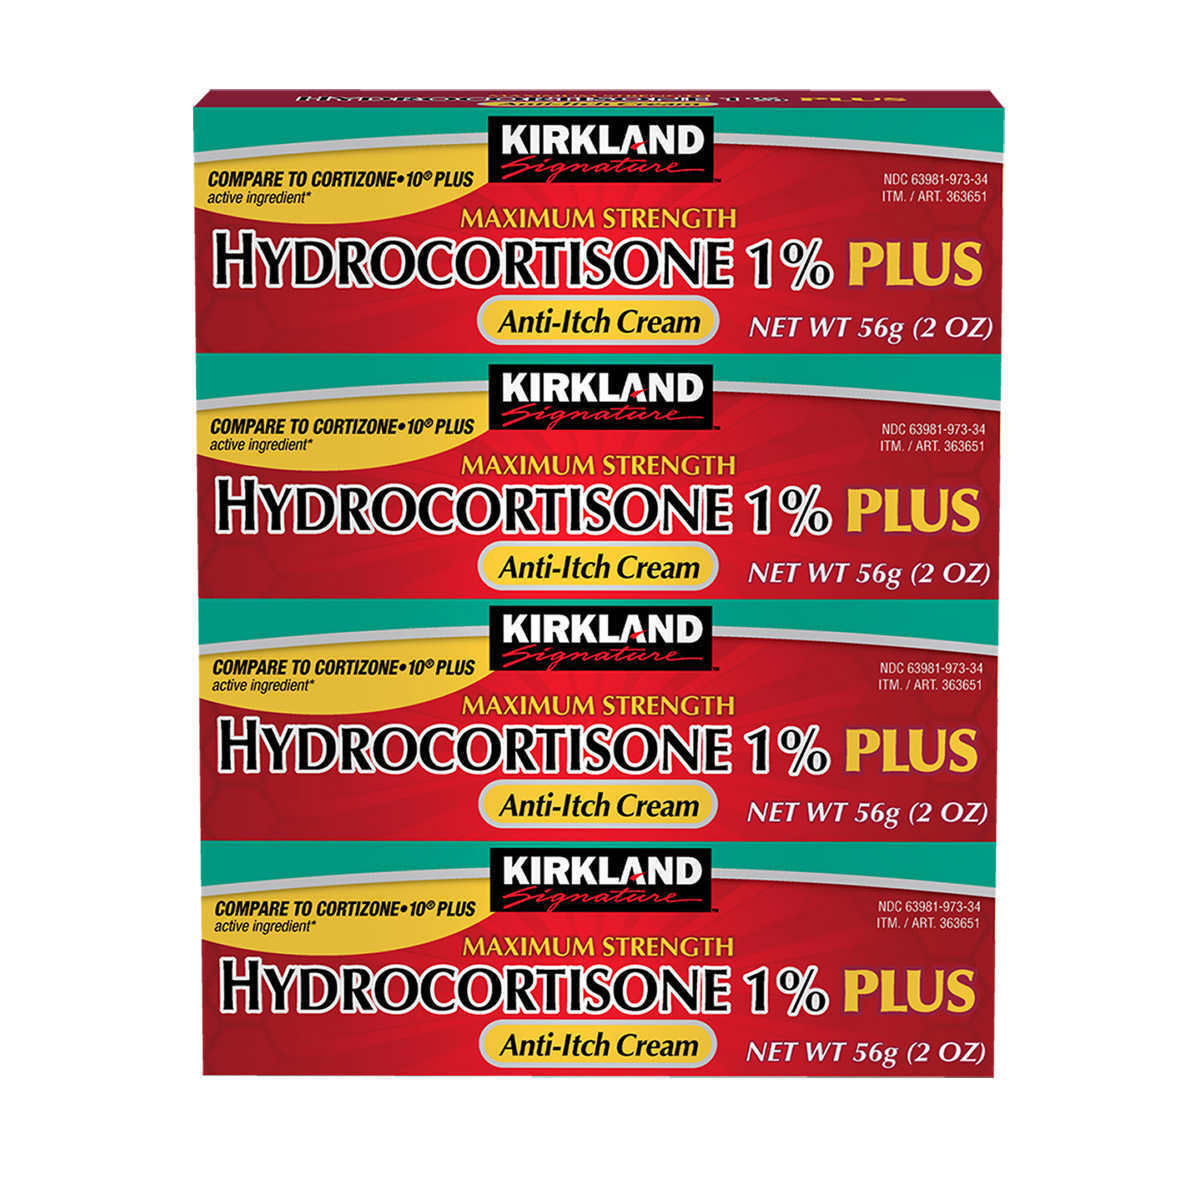 Kirkland Signature Hydrocortisone 1% PLUS Anti-Itch Cream, 8 Ounces